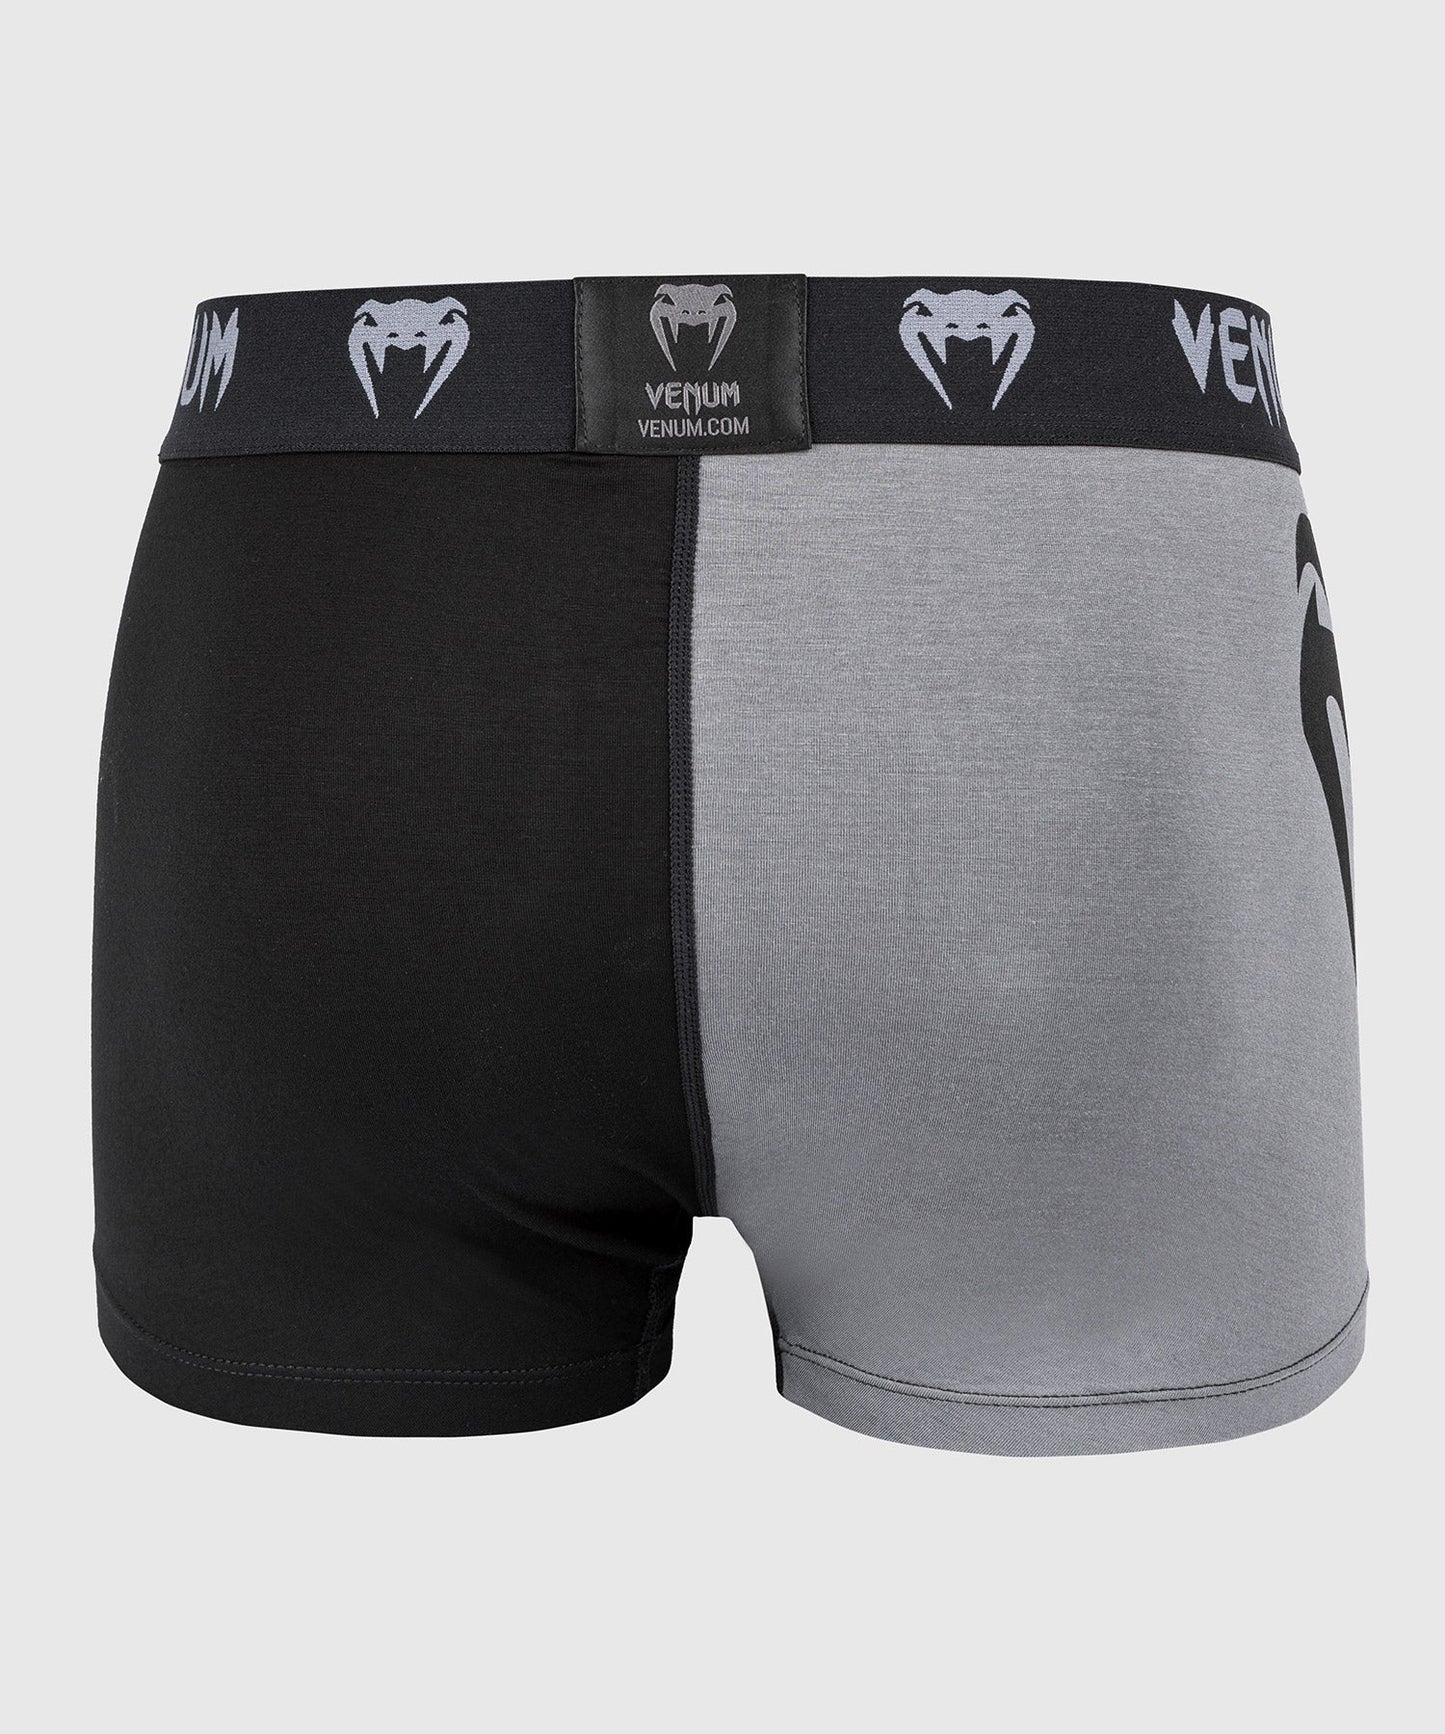 Venum Giant Underwear - Black/Grey